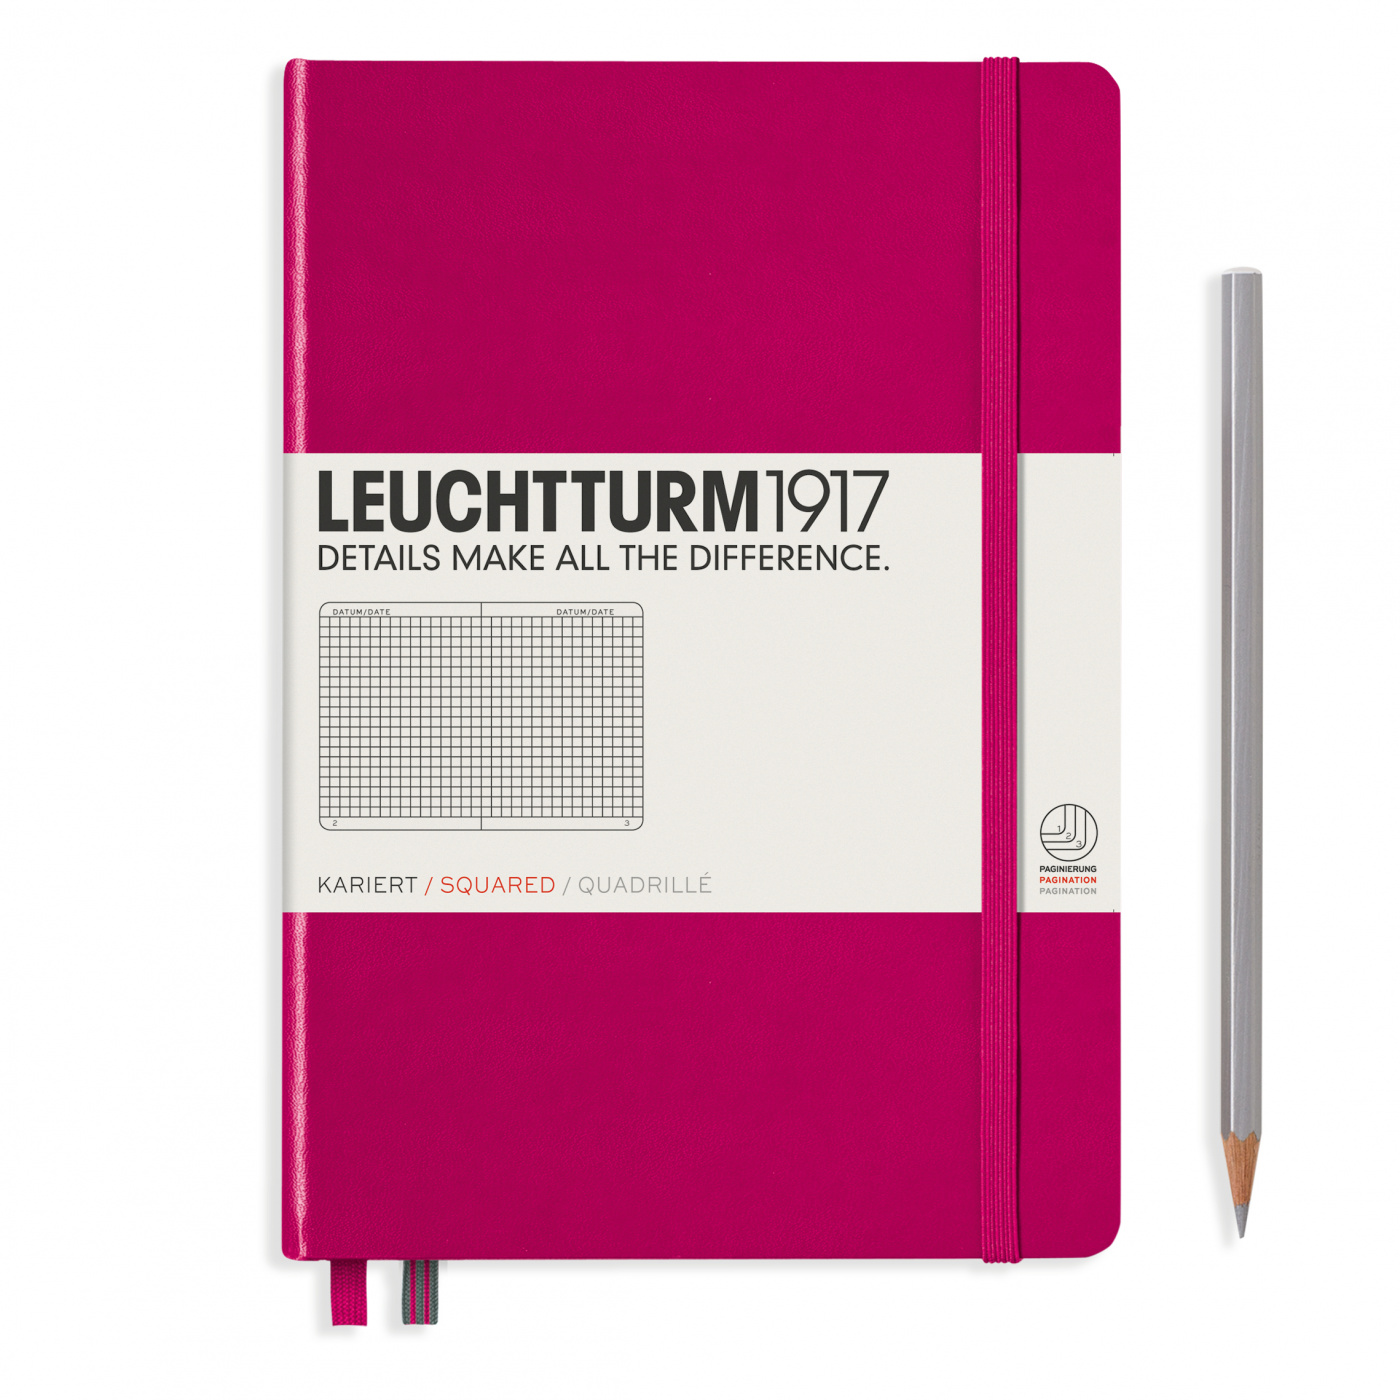 Записная книжка в клетку Leuchtturm A5 251 стр., твердая обложка розовая энциклопедия в твёрдом переплёте что откуда берётся 64 стр